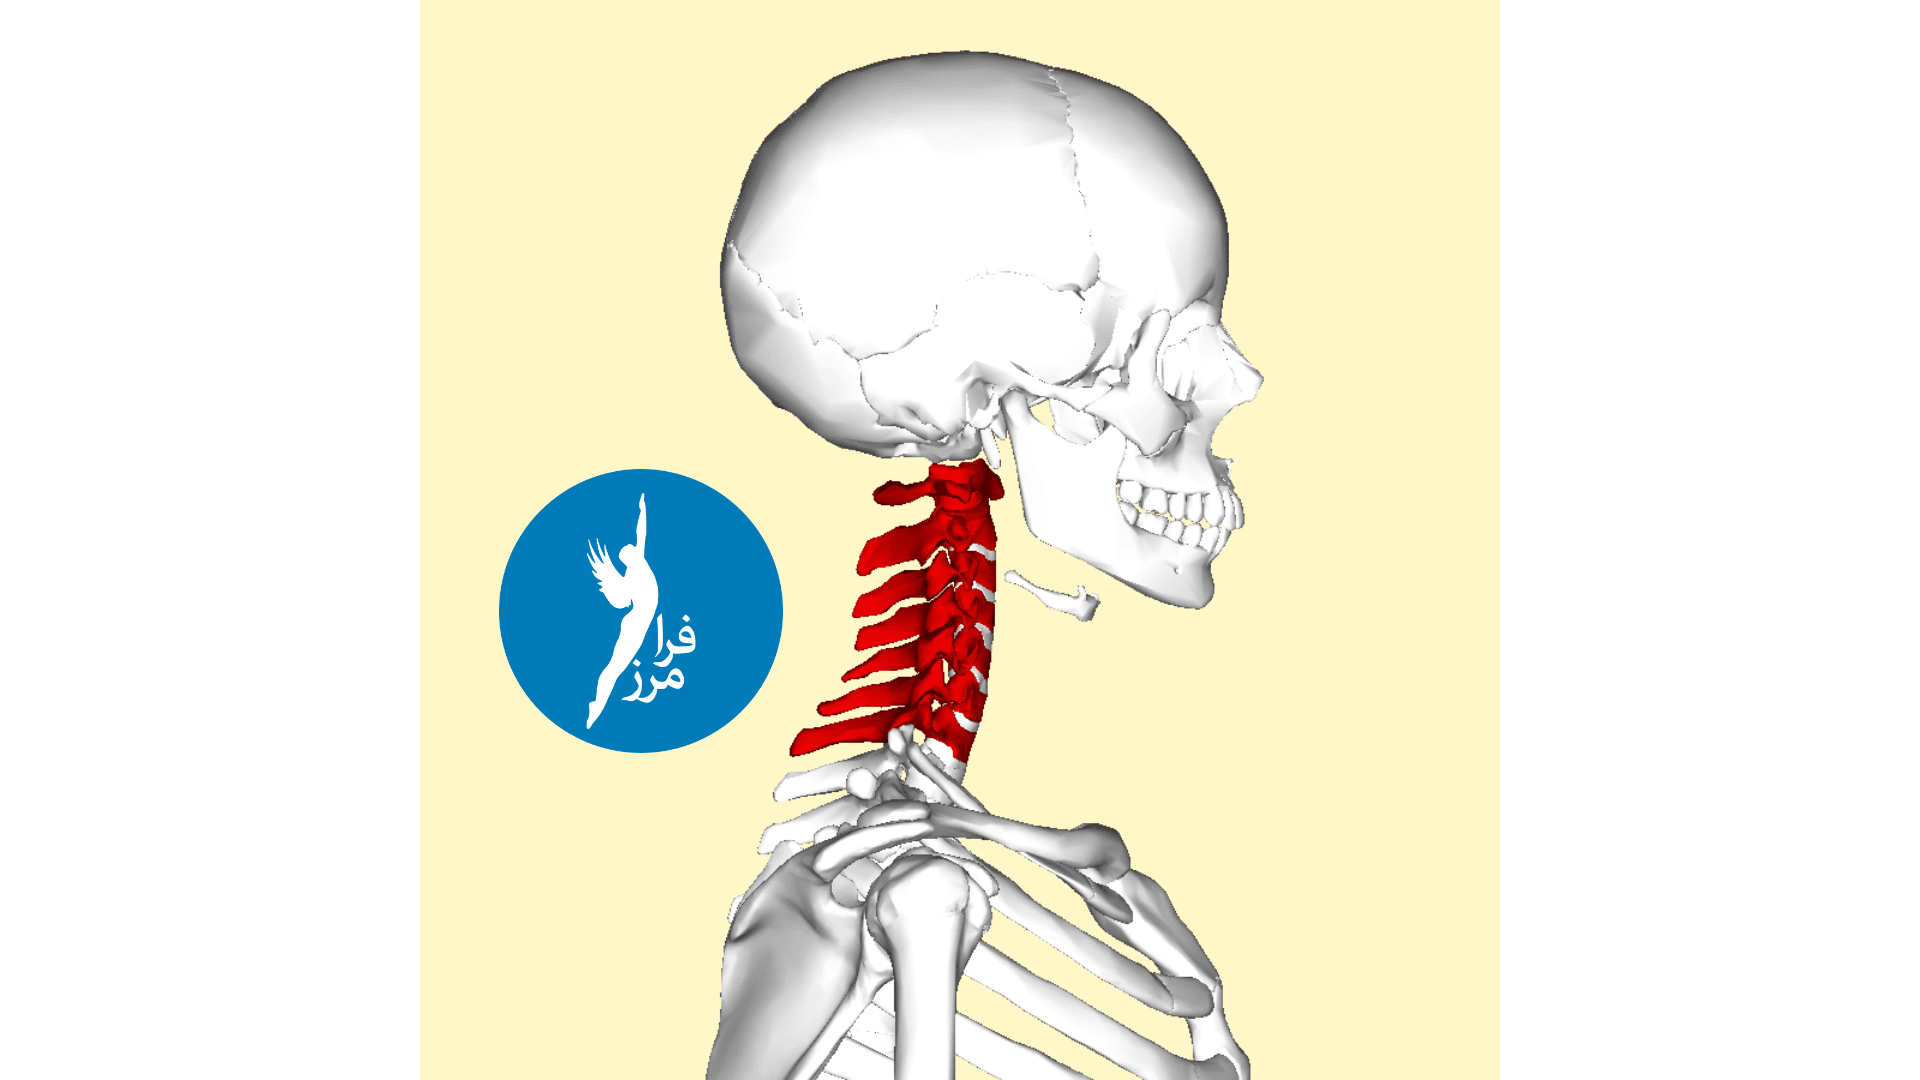 اسپوندیلوز گردن یک اصطلاح کلی برای ساییدگی و پارگی ناشی از افزایش سن در ستون فقرات گردنی (گردن) است که می تواند منجر به گردن درد، سفتی گردن و سایر علائم شود. گاهی اوقات به این حالت آرتروز یا آرتروز گردن می گویند.